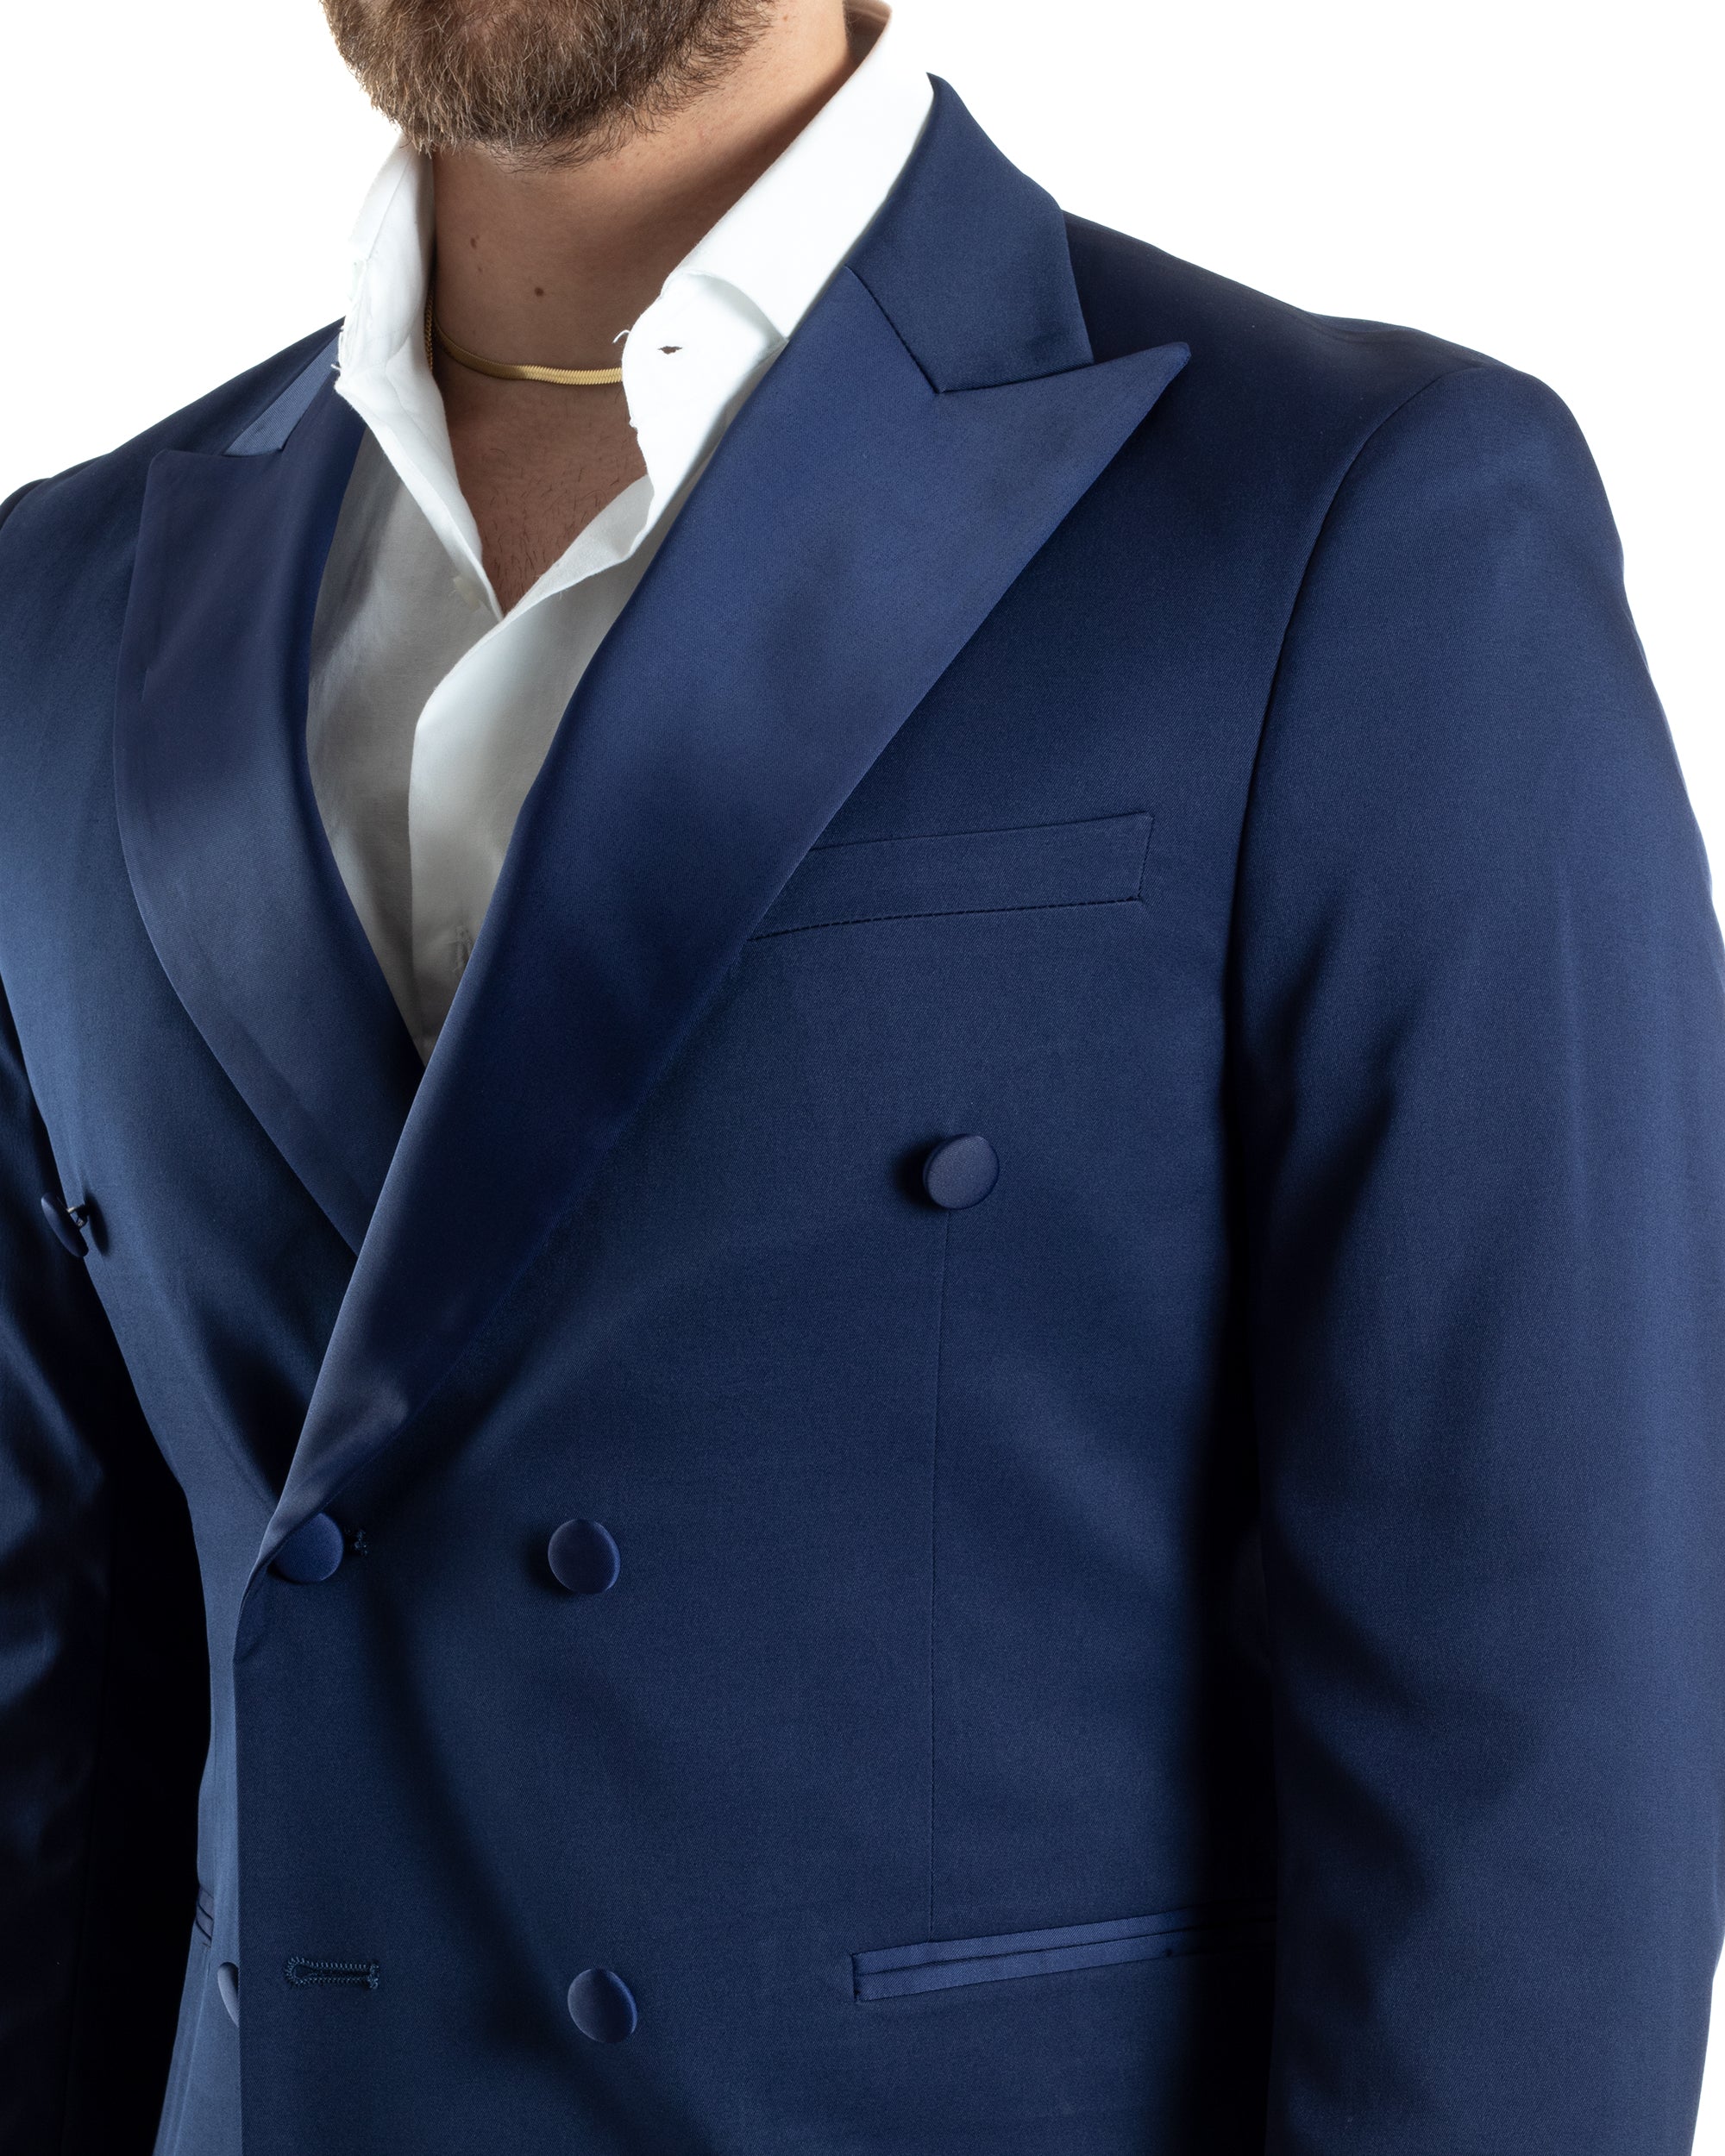 Abito Uomo Doppiopetto Vestito Completo Giacca Pantaloni Bottoni Revers Raso Blu Elegante Smoking GIOSAL-AE1050A